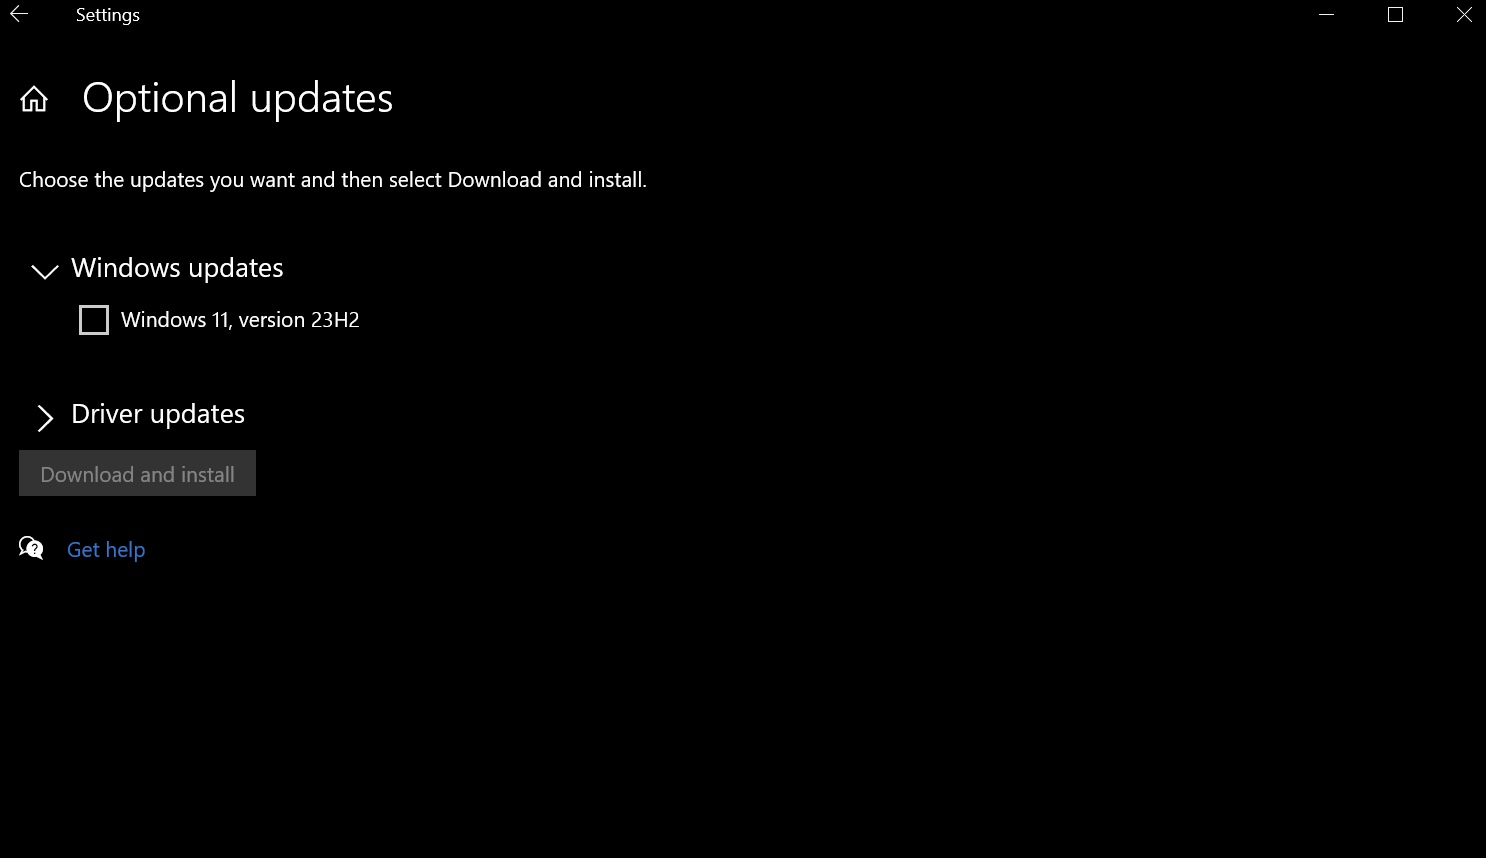 Windows 11 23H2 as an optional update